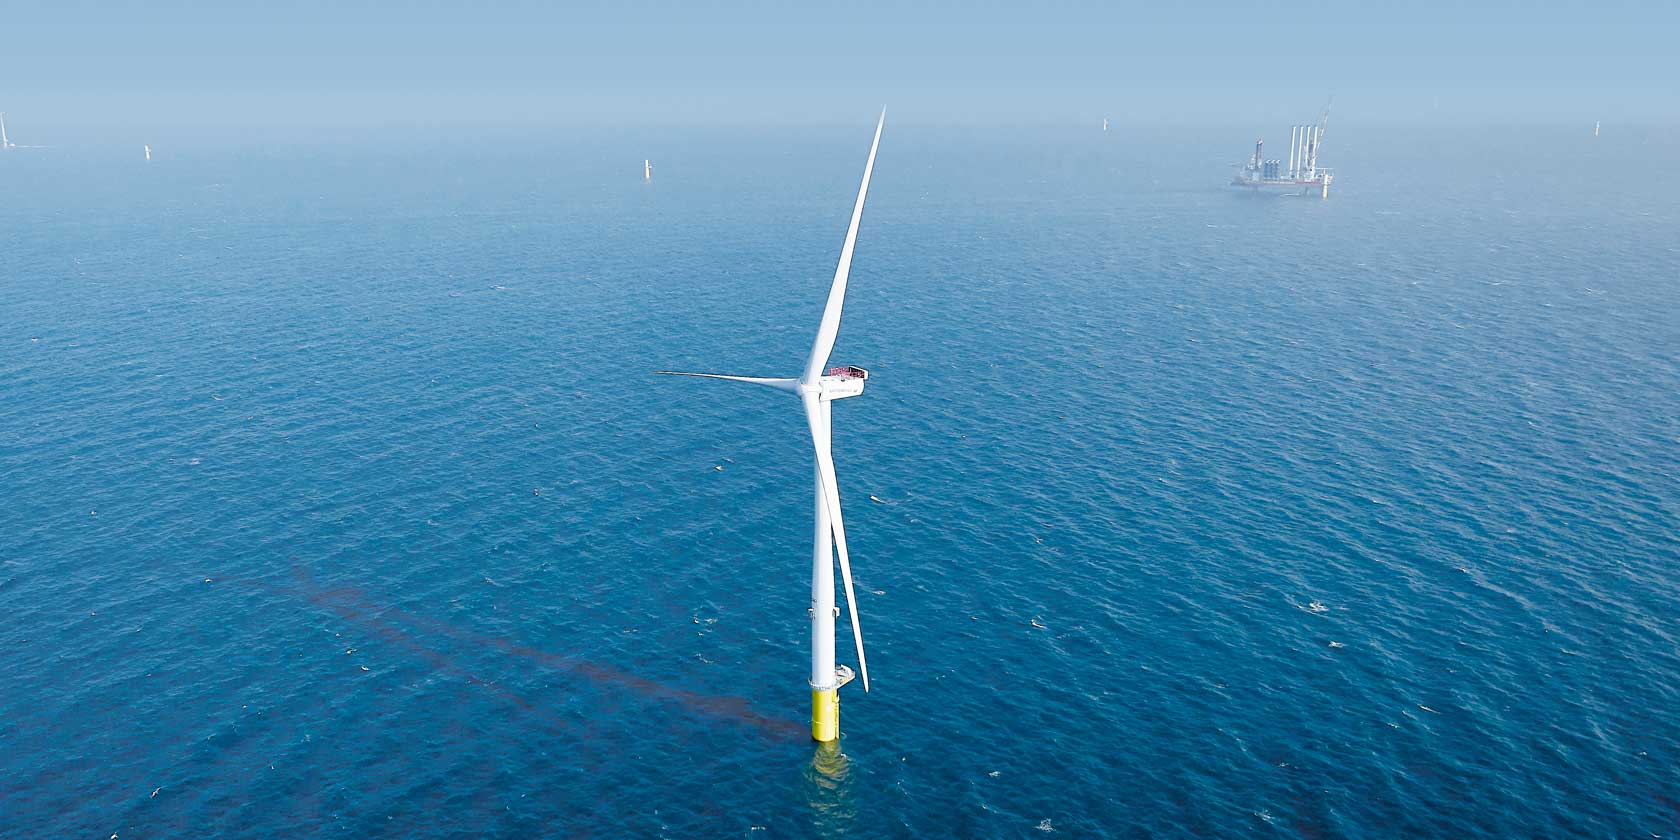 The Horns Rev 3 offshore wind farm in Denmark